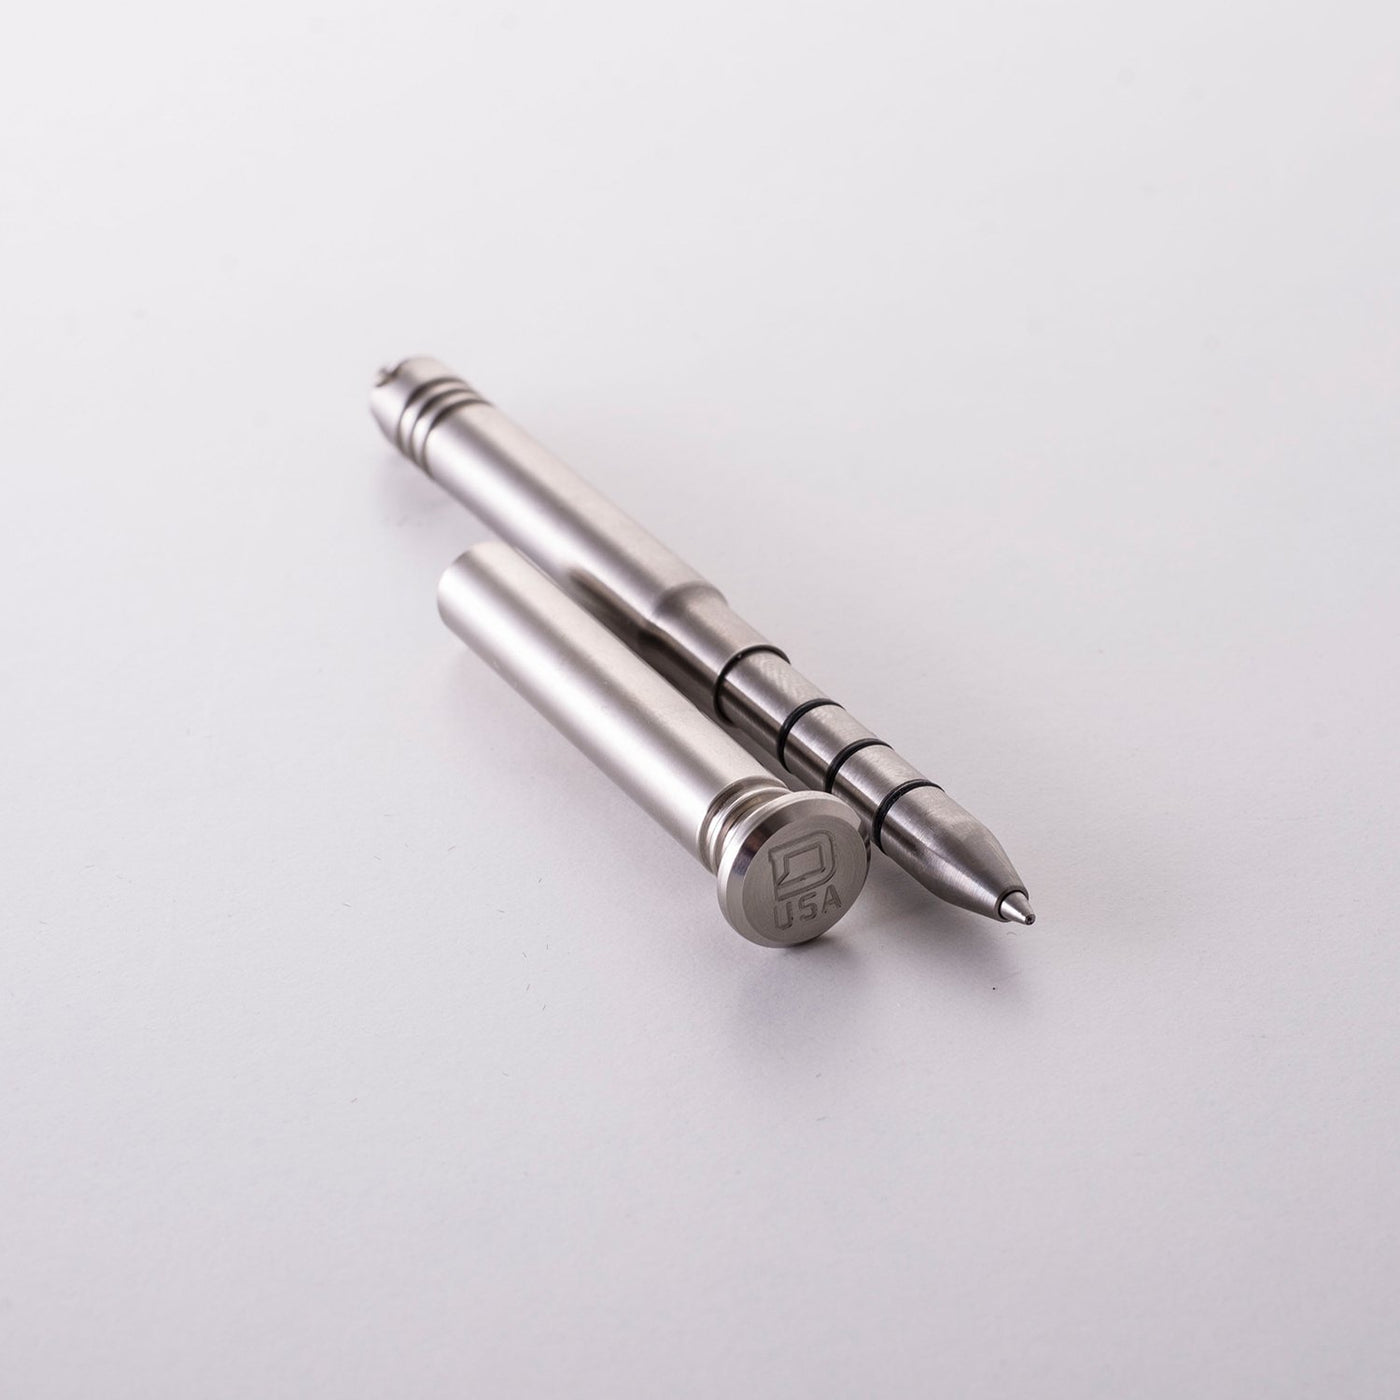 DANGO - P01 Titanium Pen